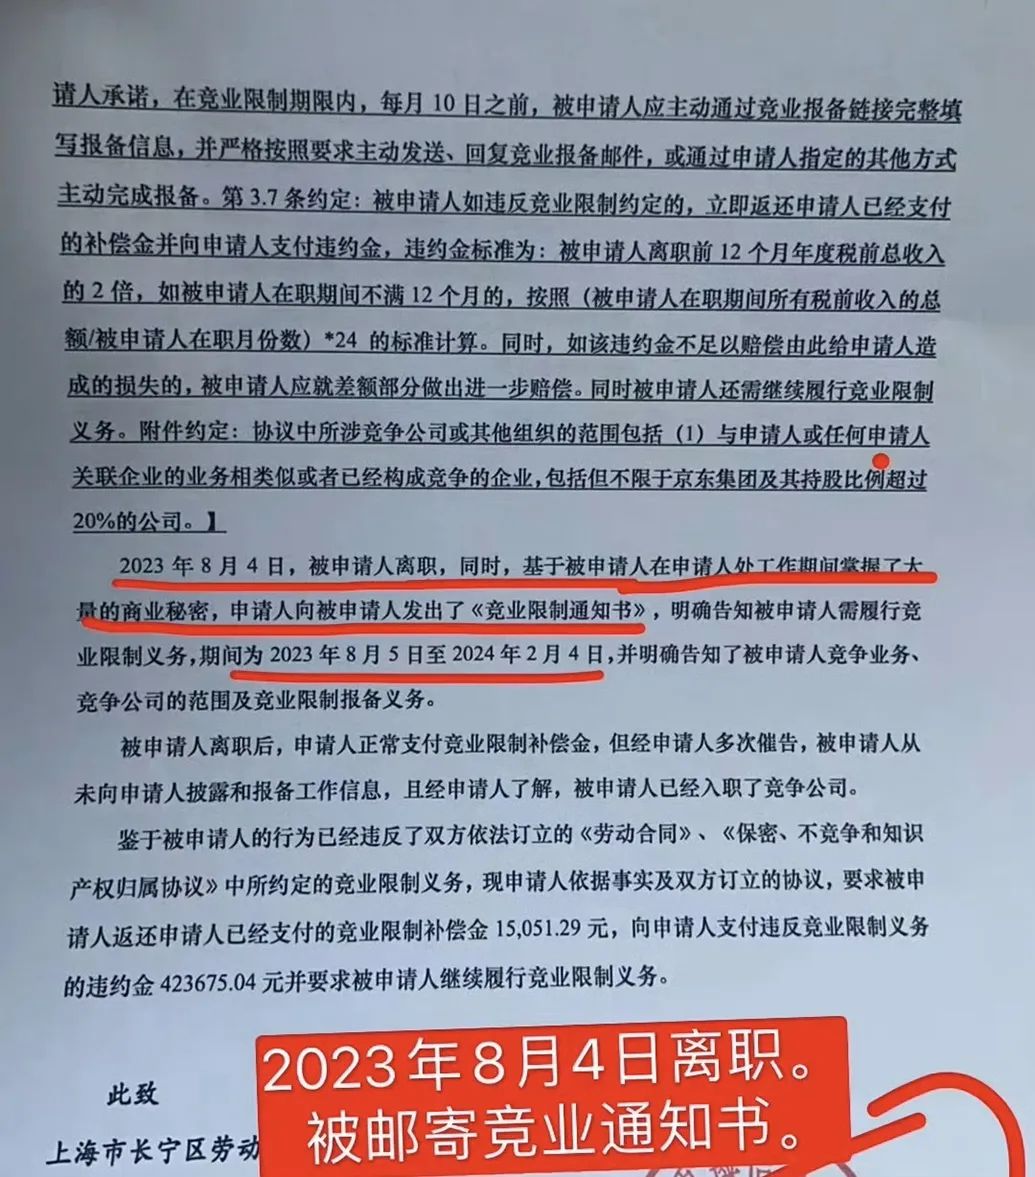 因违反竞业协议，徐阳被前东家索赔违约金423675元。